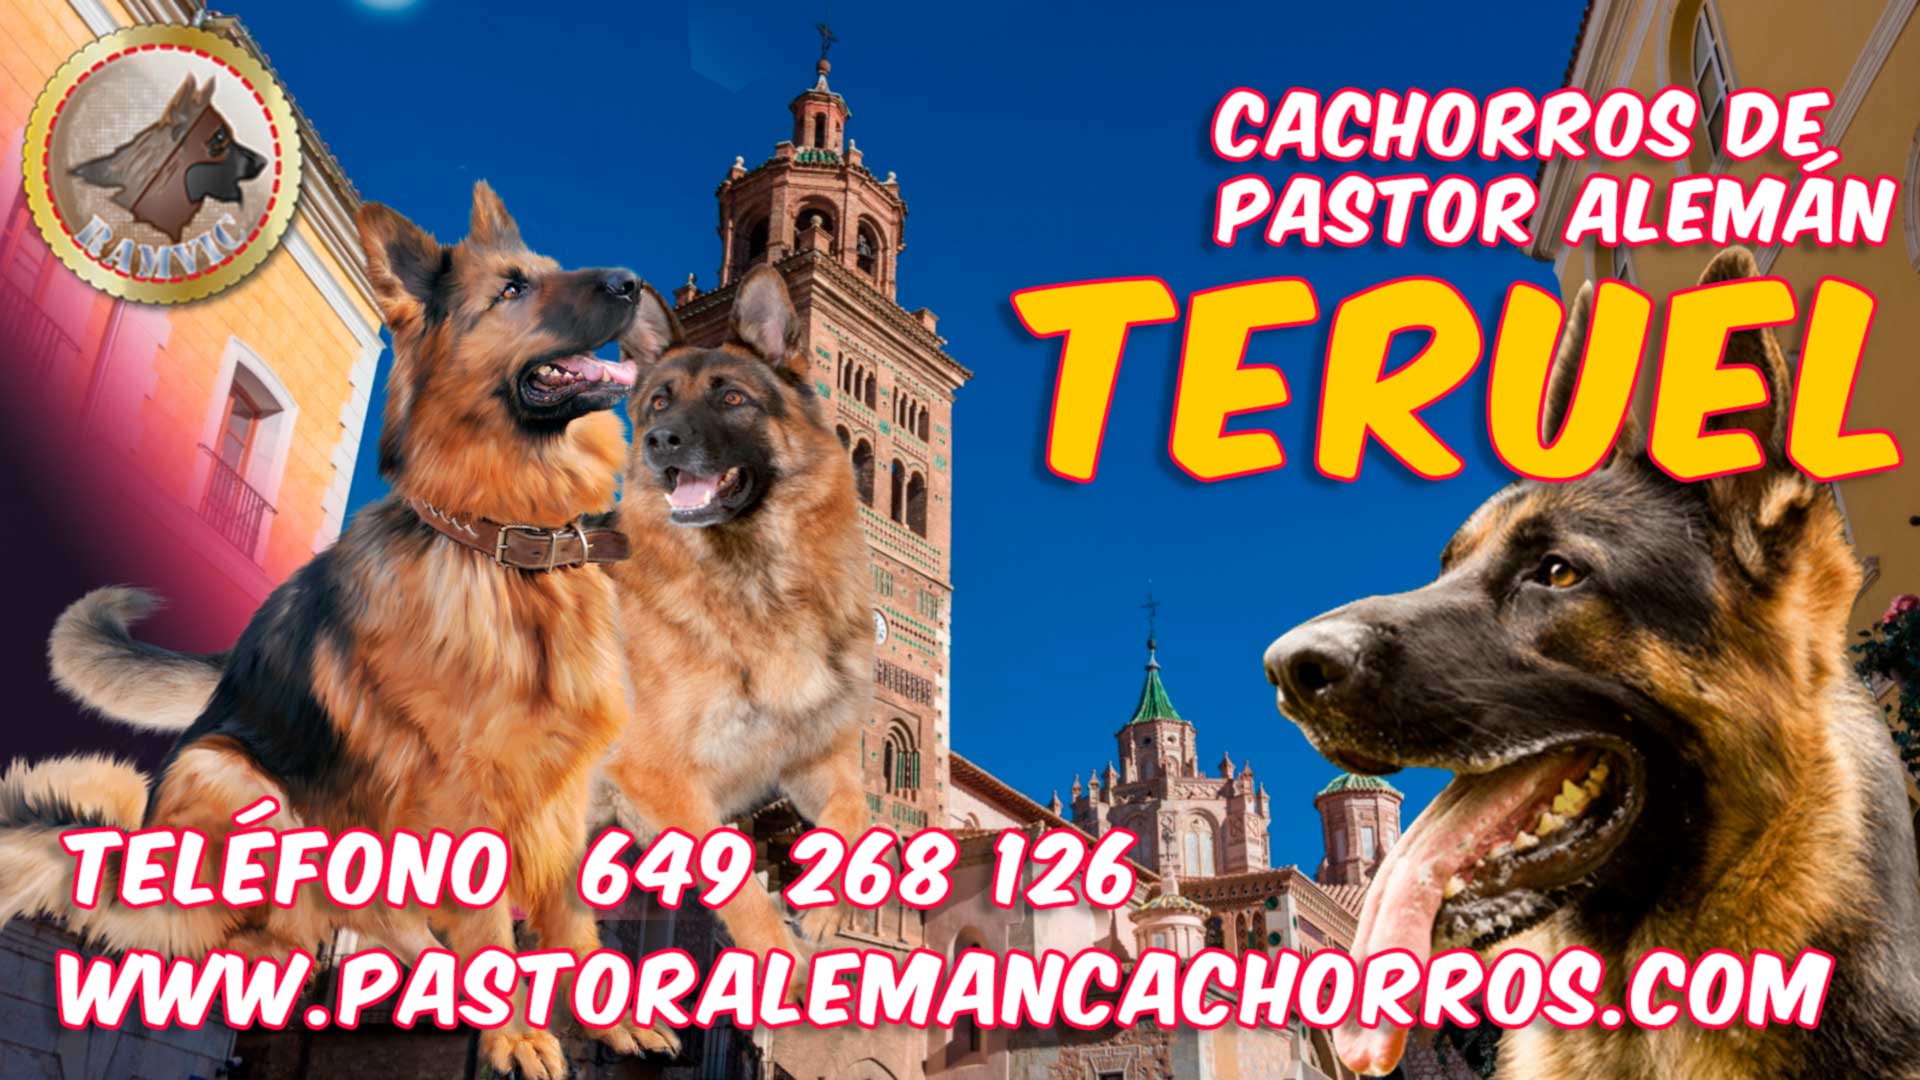 Comprar cachorros de Pastor Alemán en Teruel, Aragón.